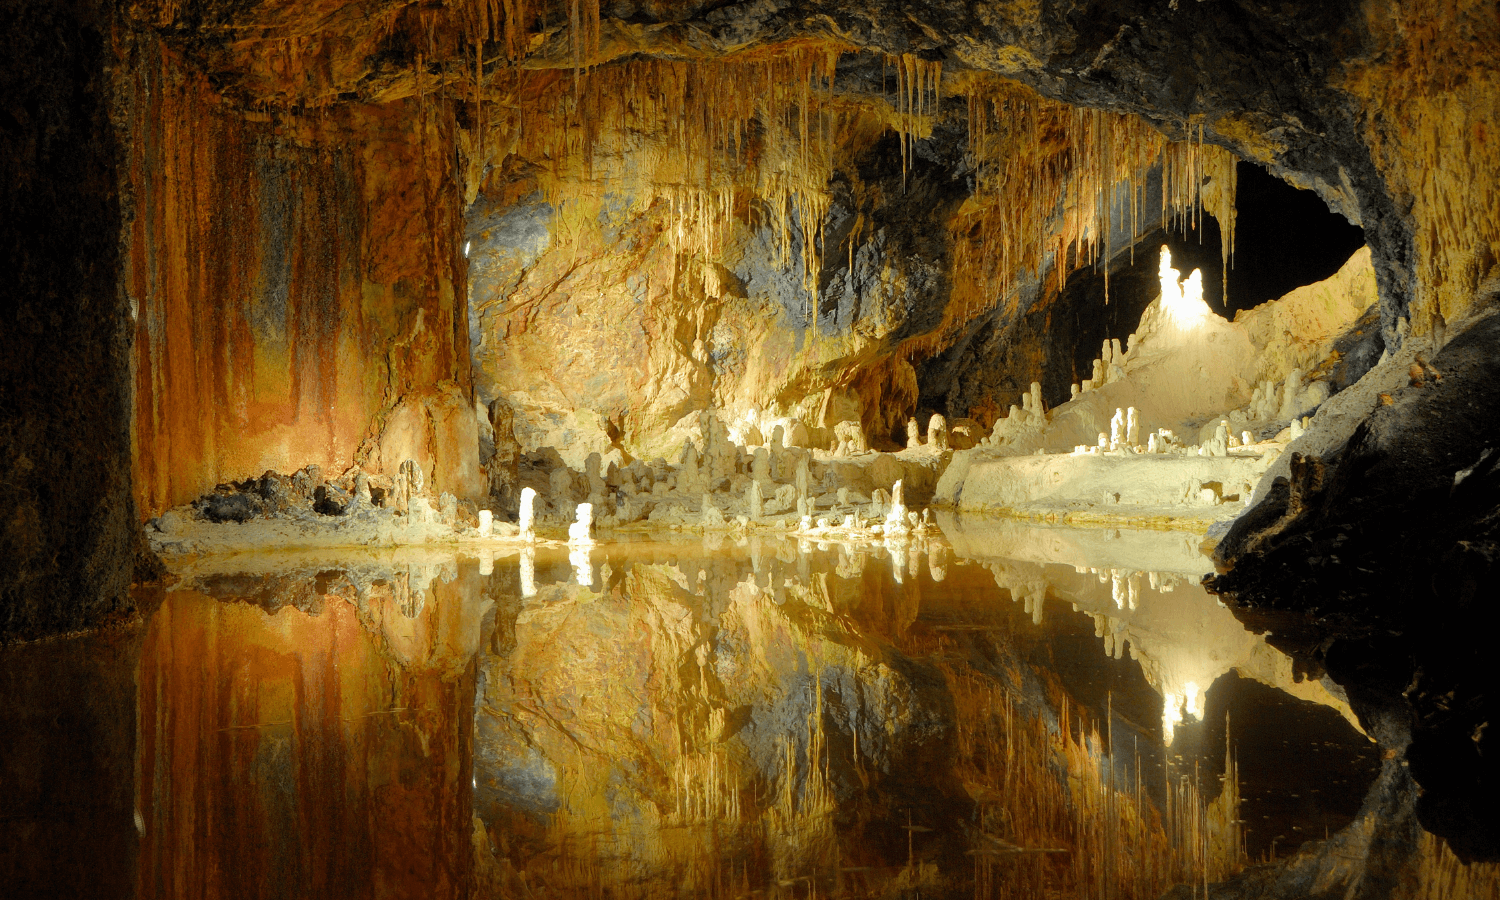 Die Saalfelder Feengrotte ist eine der schönsten Höhlen in Deutschland, denn die Tropfsteine leuchten in schillernden Farben. © iStock.com